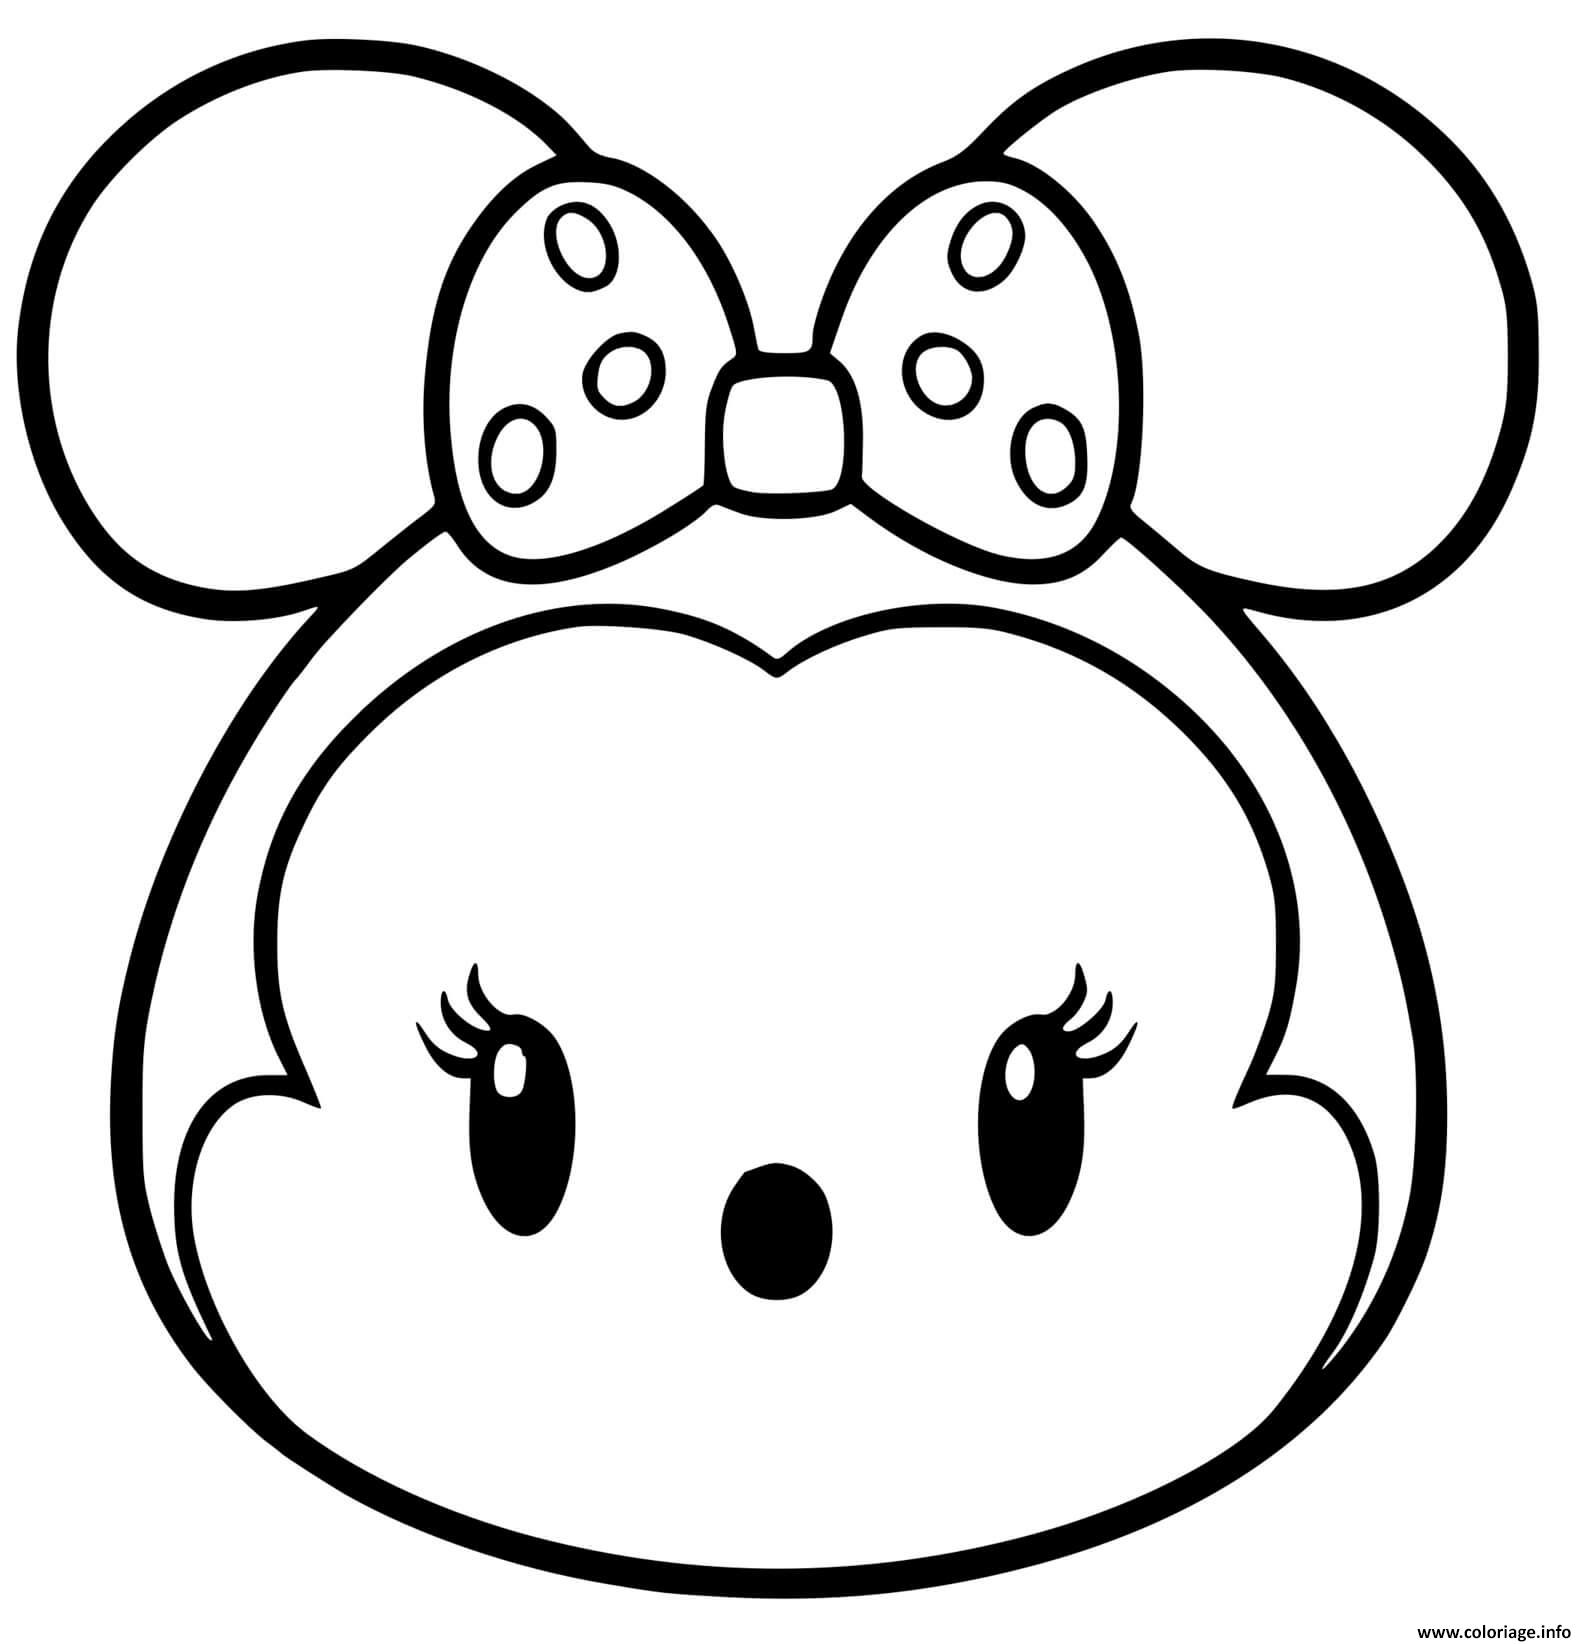 Dessin Minnie Mouse Tsum Tsum kawaii disney Coloriage Gratuit à Imprimer